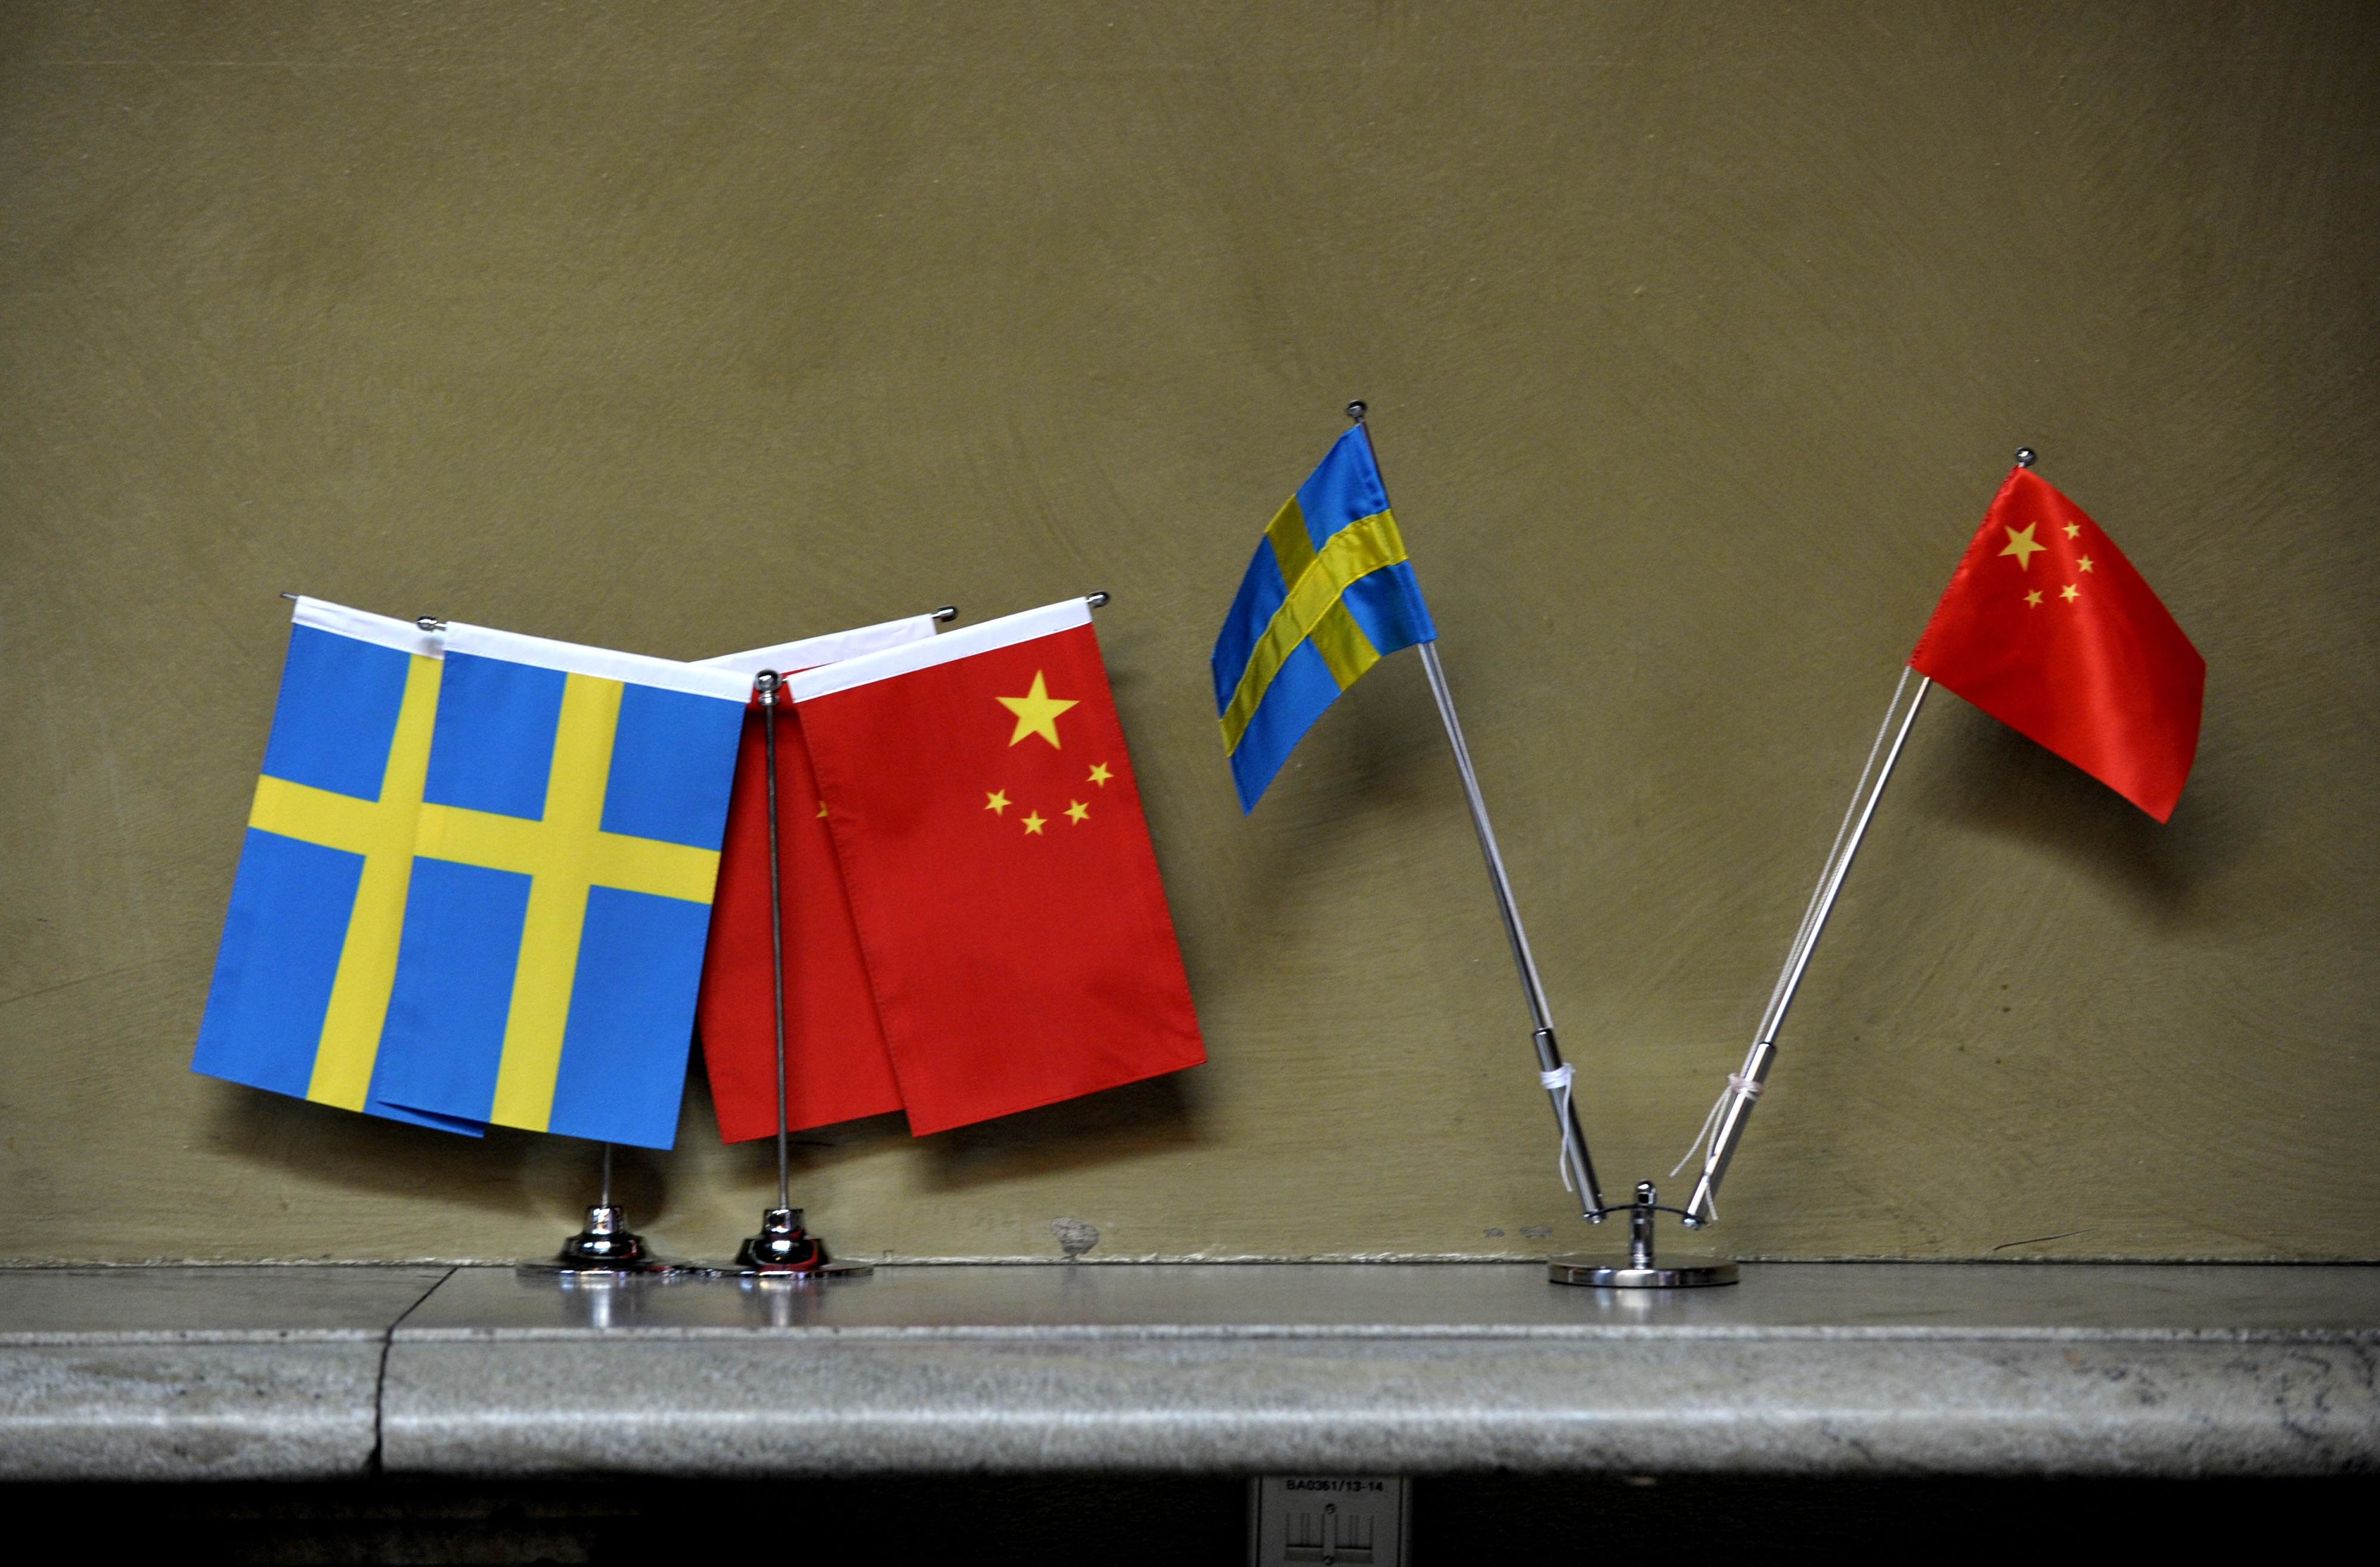 Lokal frost i relationerna: Avbrutna vänortssamarbeten mellan Sverige och Kina